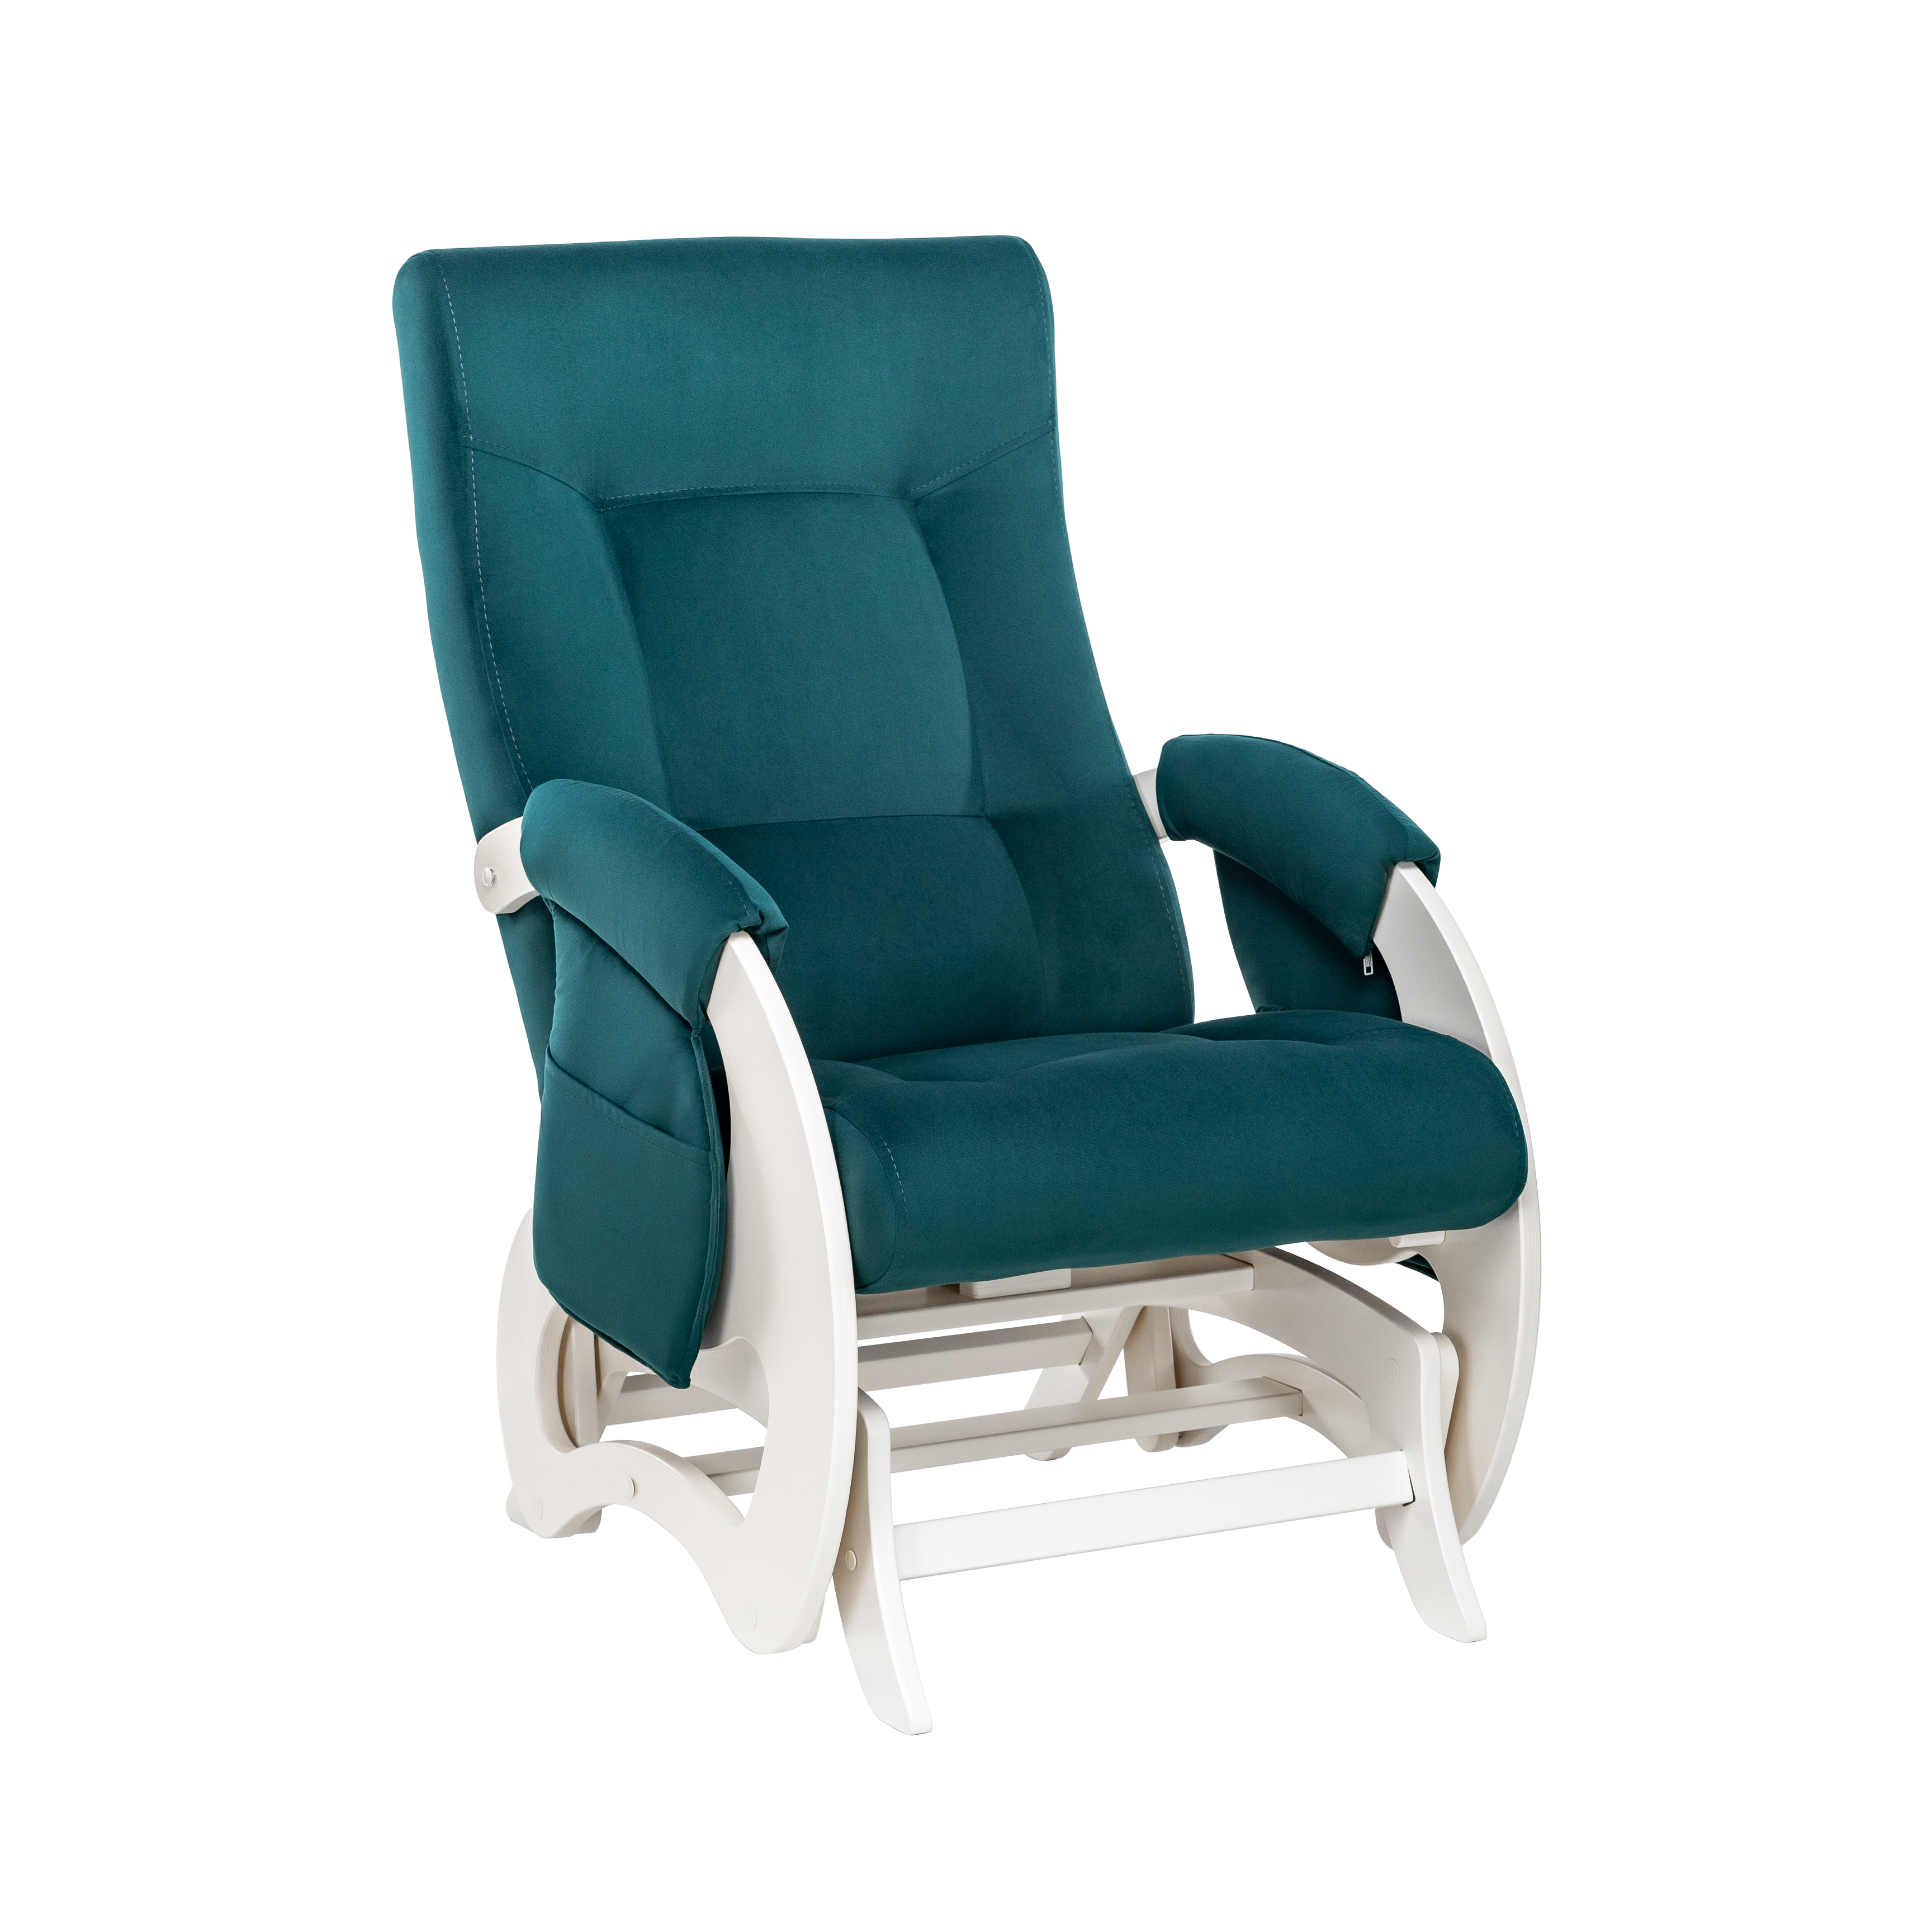 Кресло-глайдер для мамы для кормления Milli Ария Дуб молочный V20 кресло для мамы milli пуф uni молочный дуб